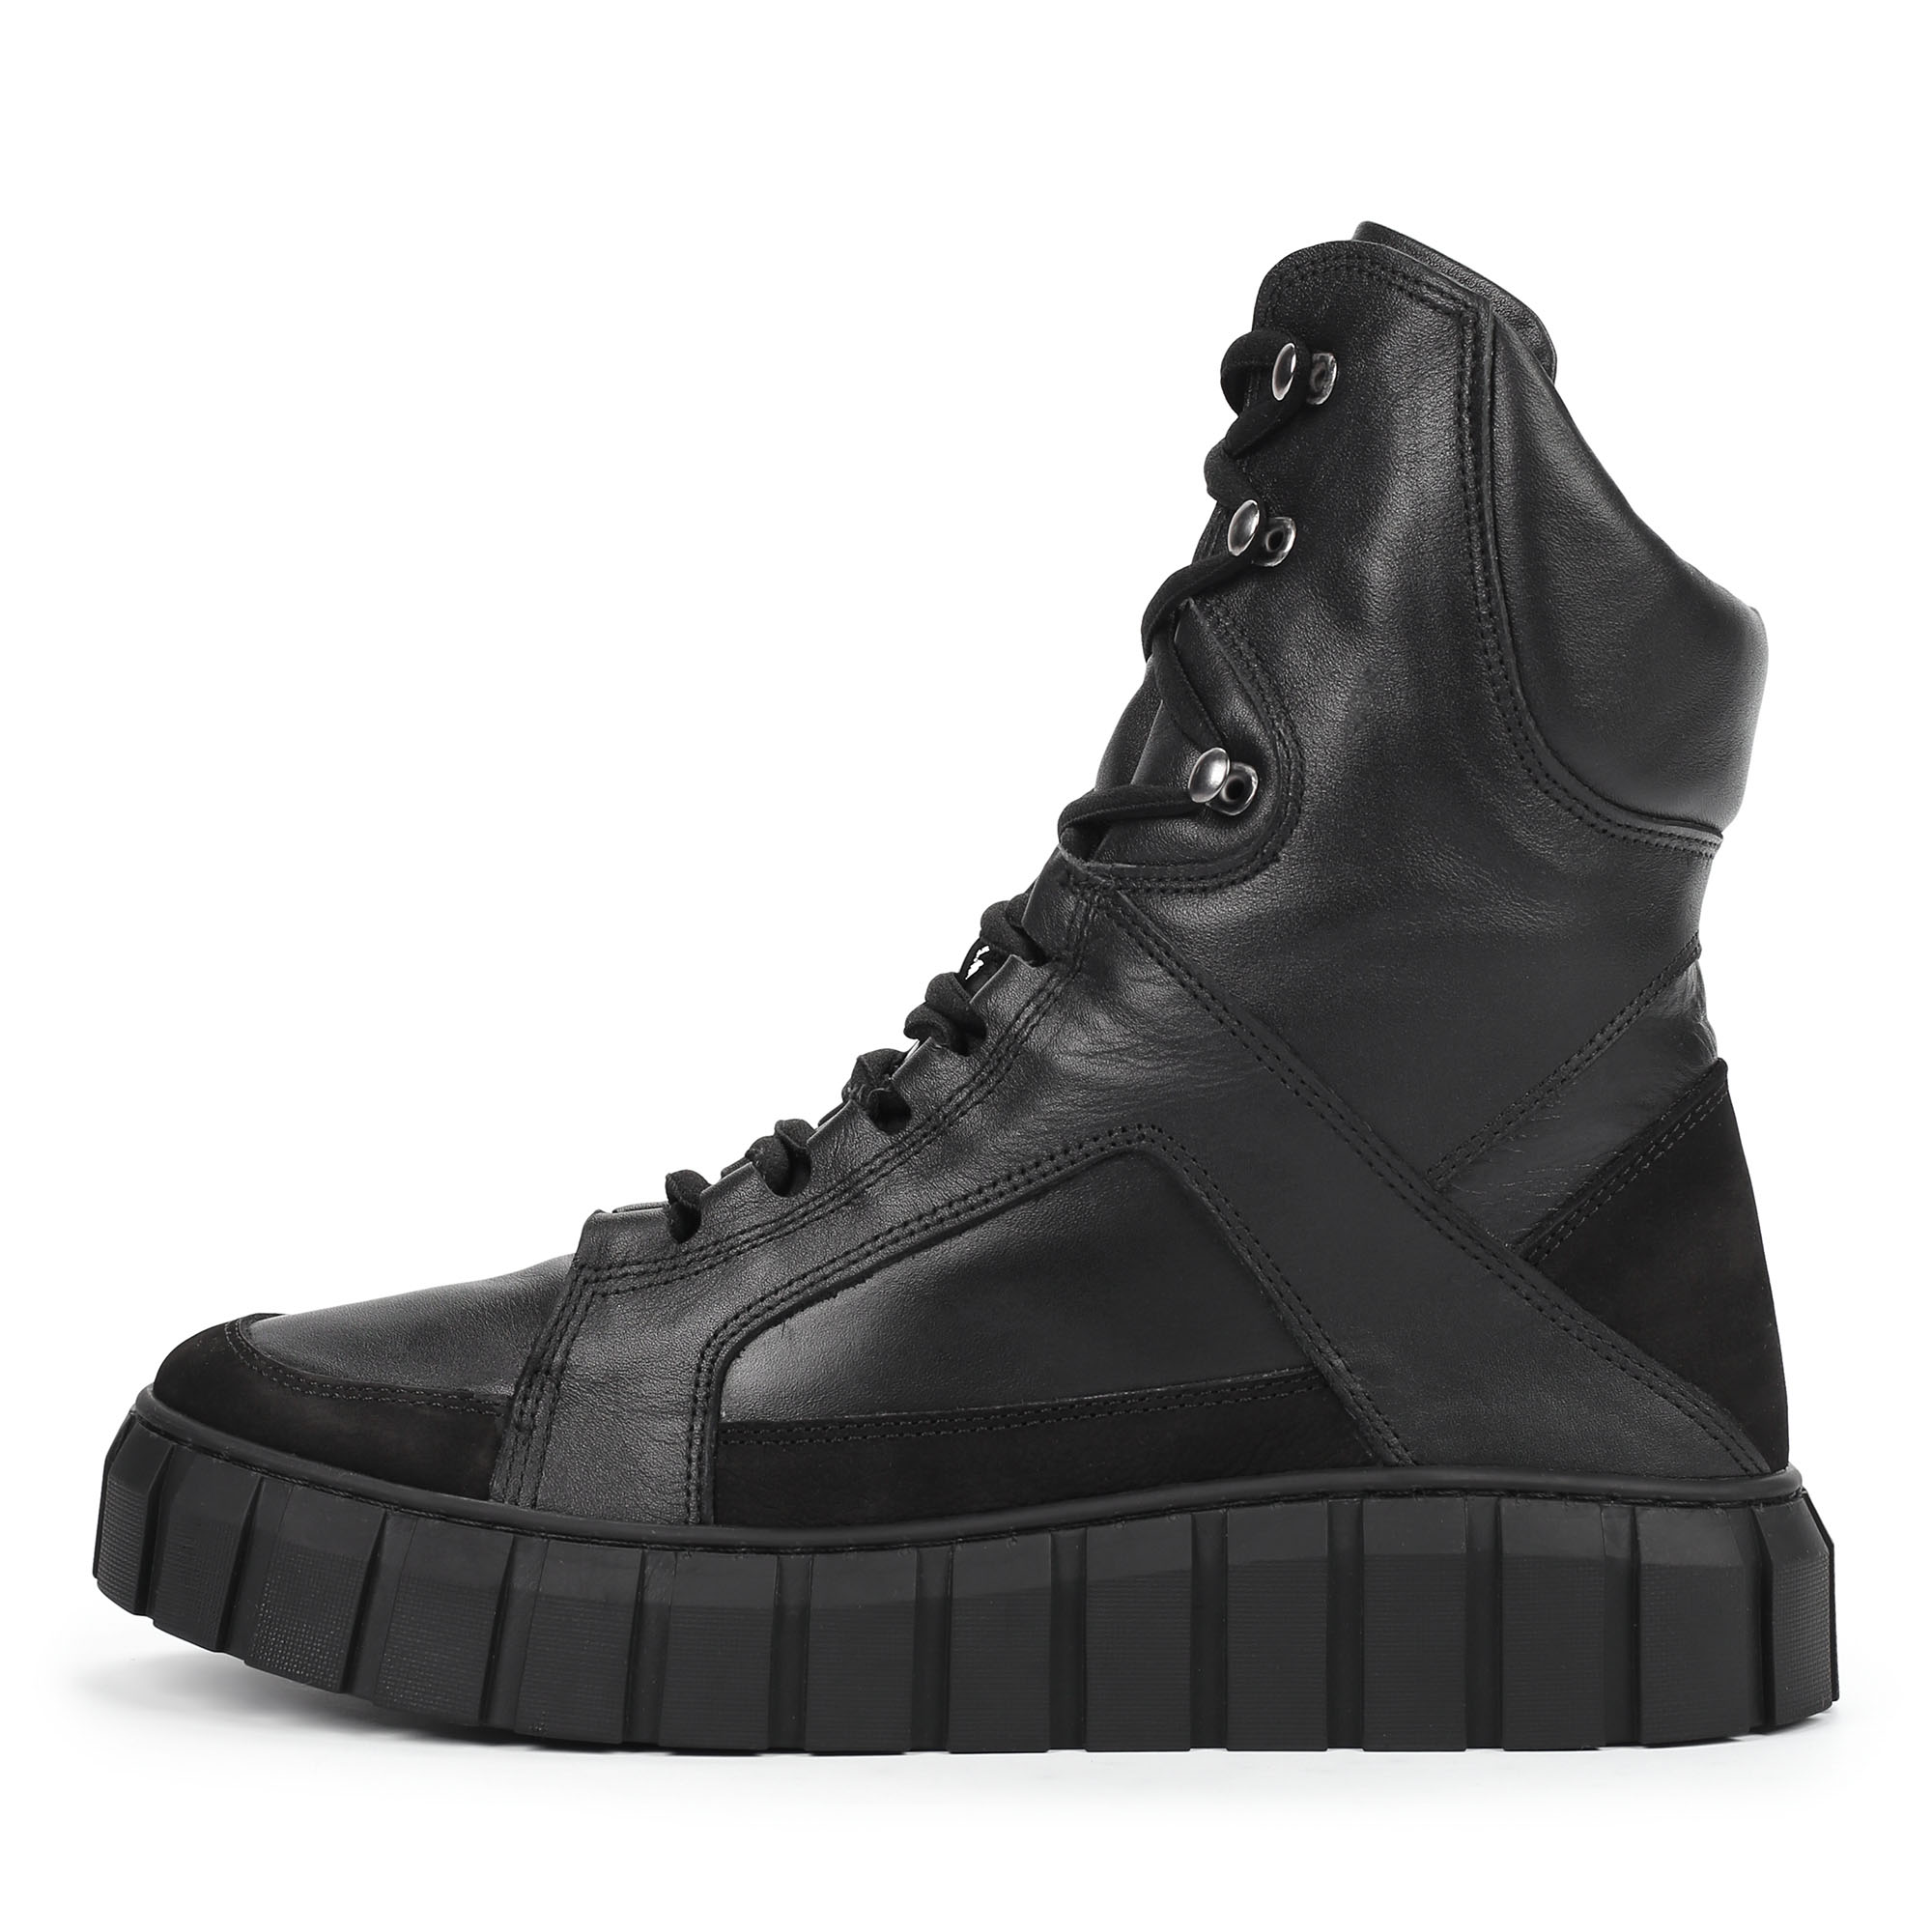 Ботинки Thomas Munz 558-038A-2102, цвет черный, размер 38